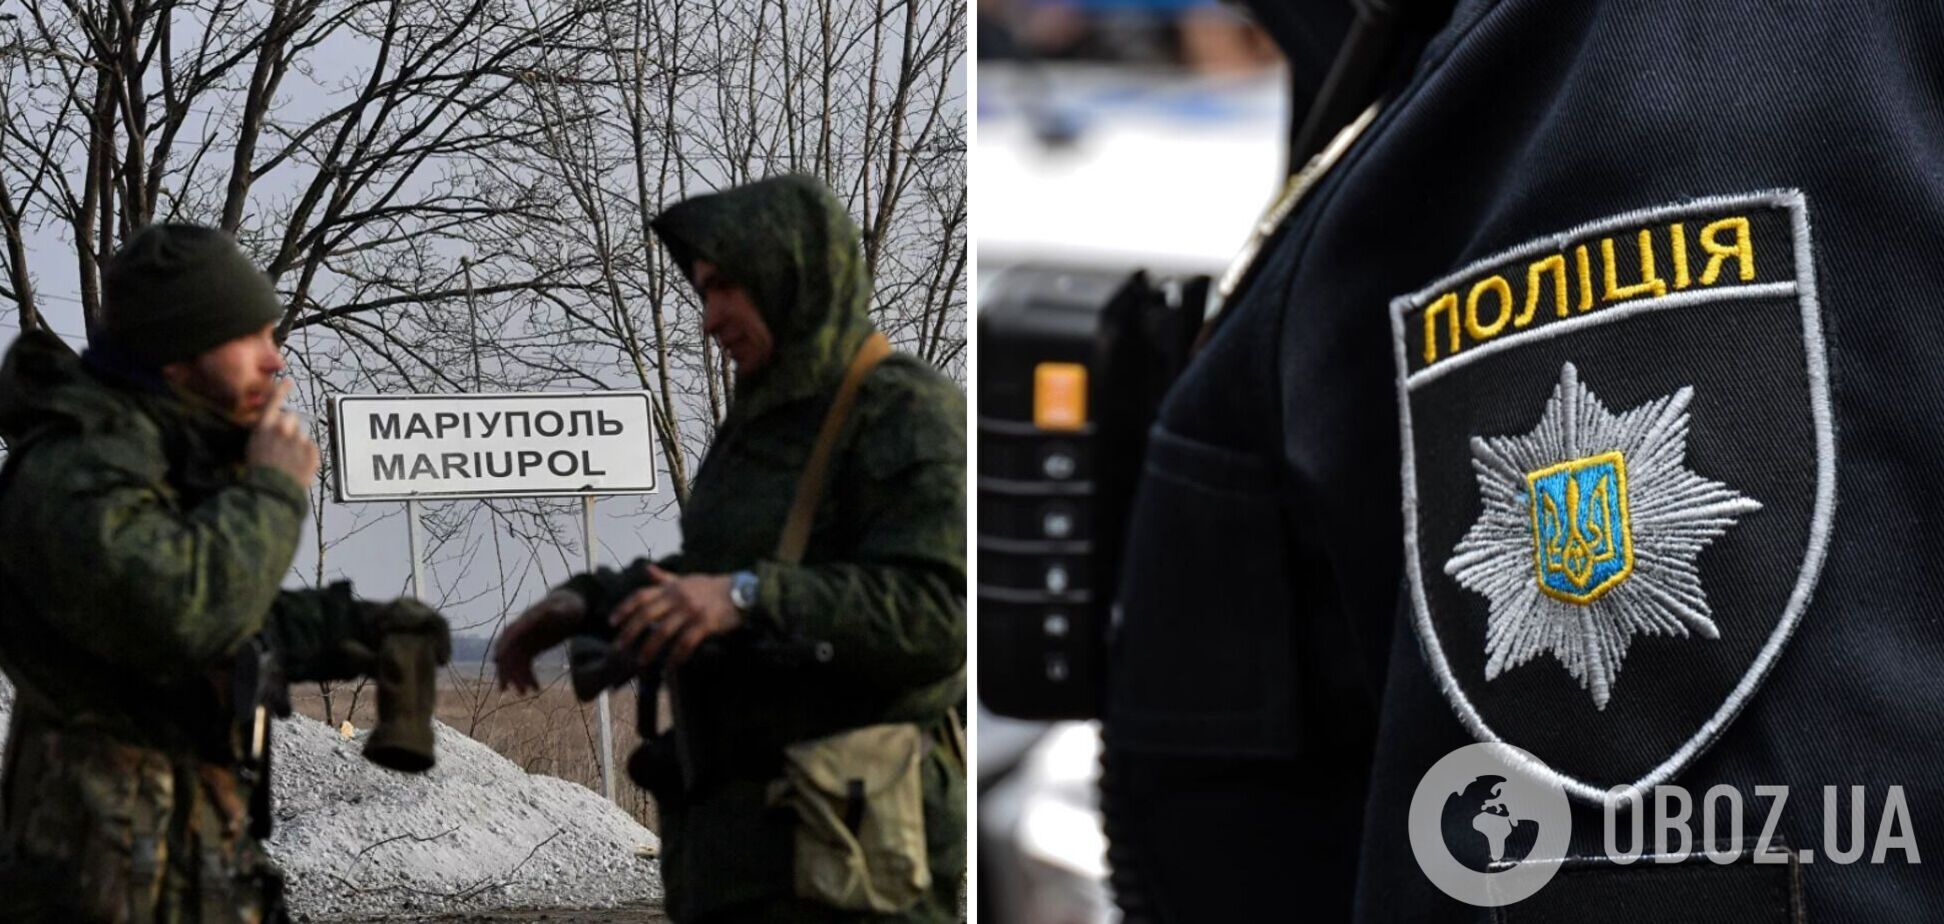 Предали Украину и пошли служить оккупантам: троим полицейским из Мариуполя сообщили о подозрении. Фото